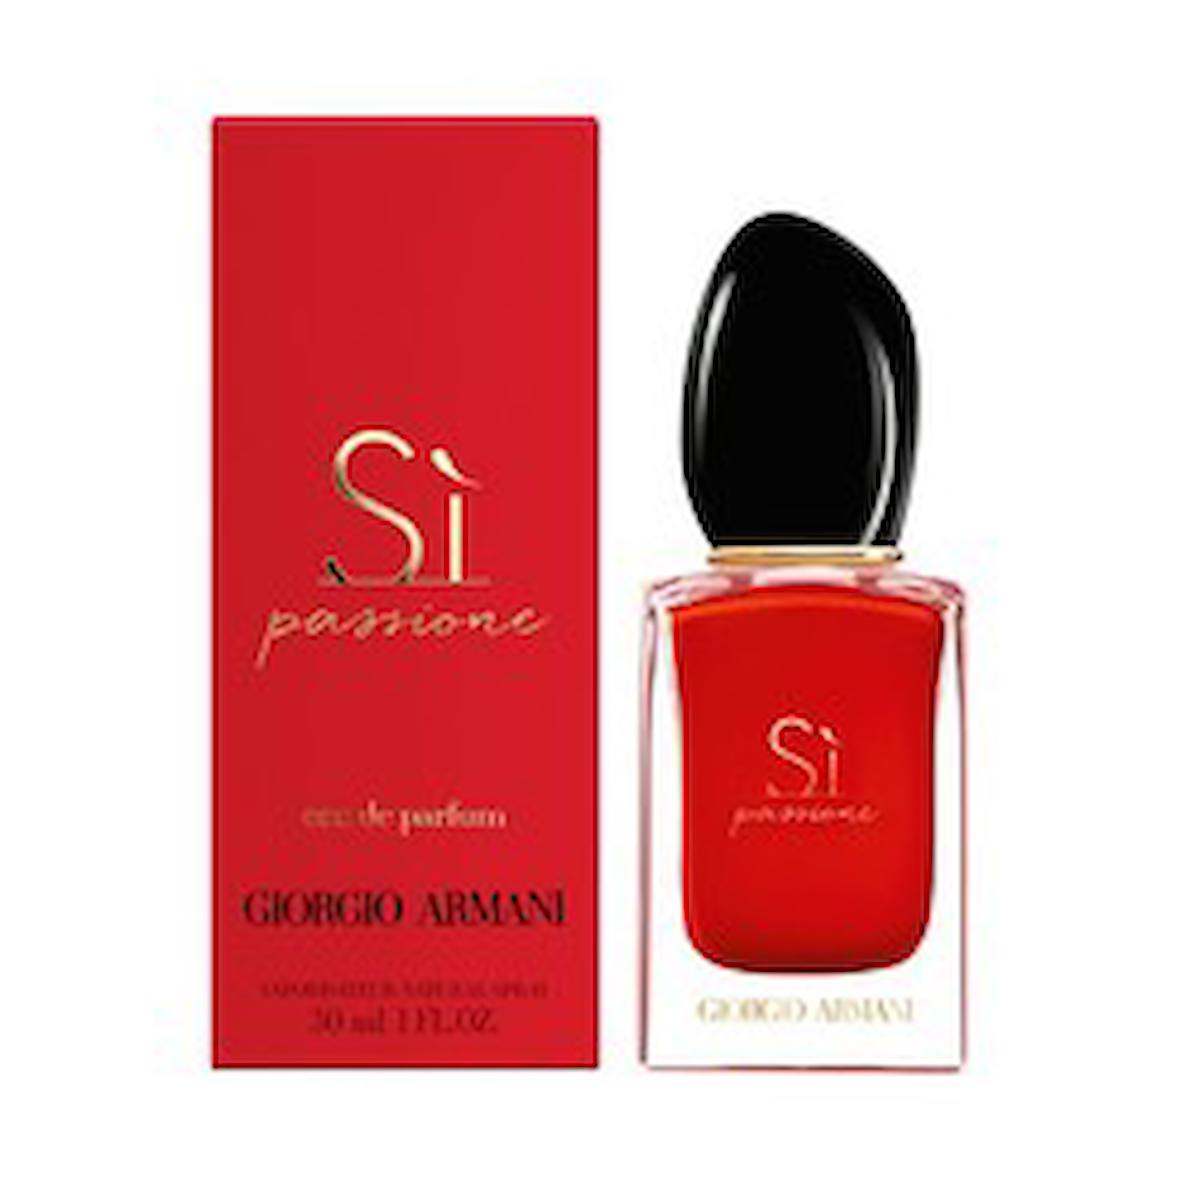 Giorgio Armani Si Passione EDP Odunsu-Oryantal Kadın Parfüm 50 ml